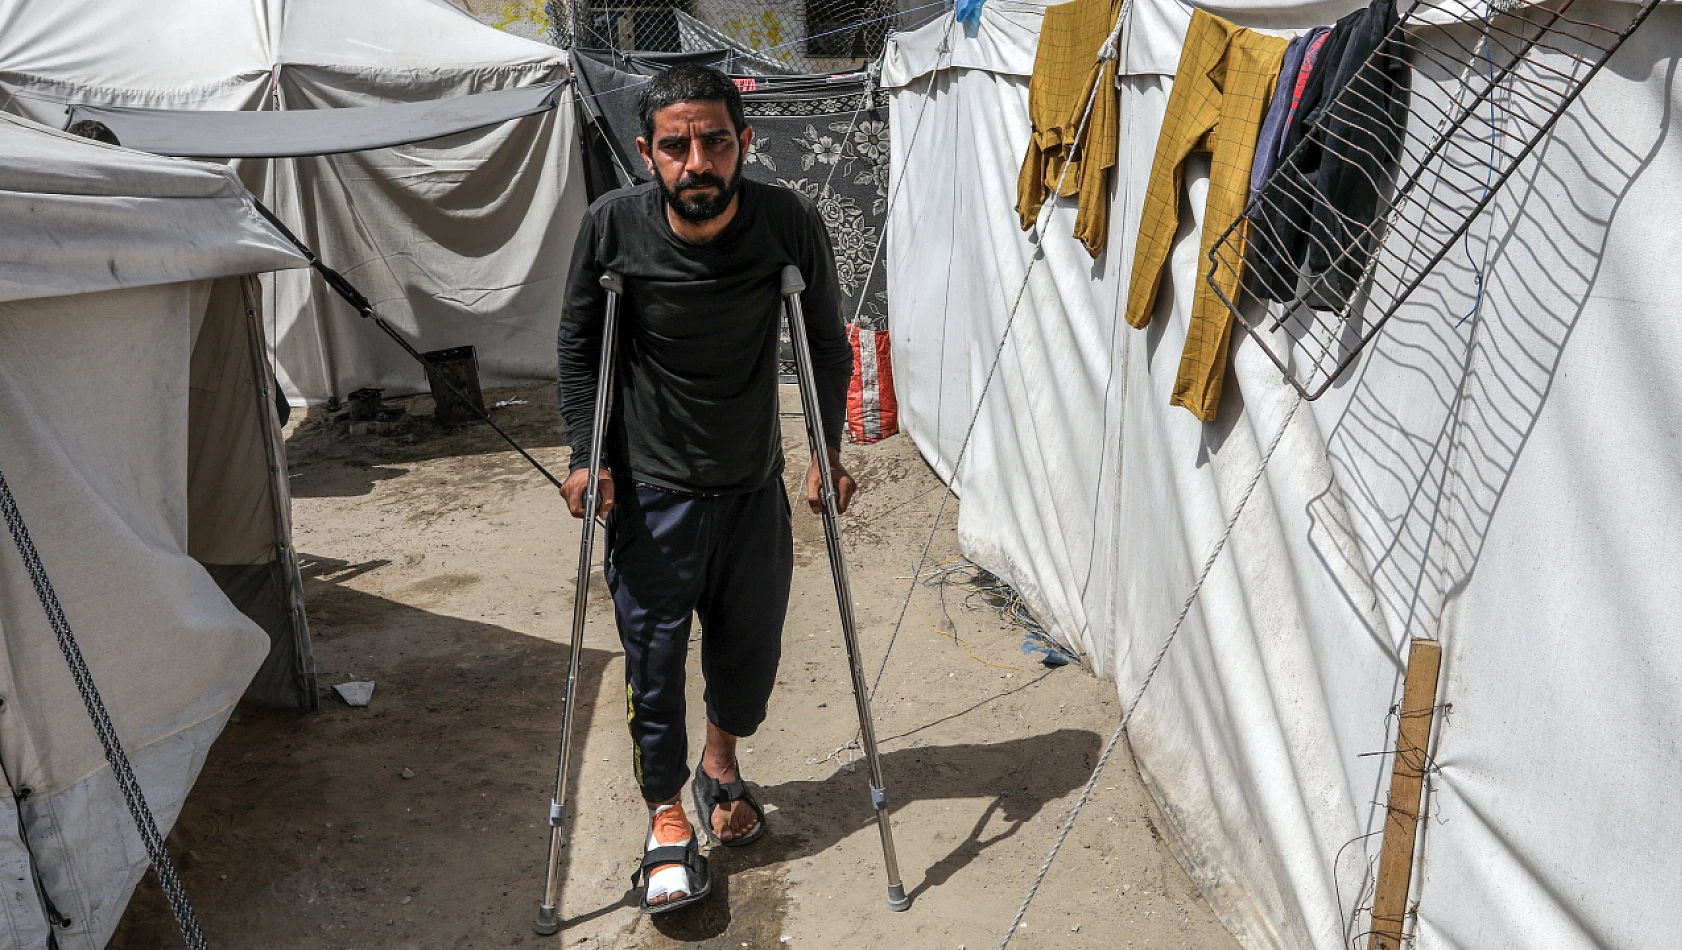 Filistinli İbrahim El-Neccar, tedavi için yardım çağrısında bulunuyor